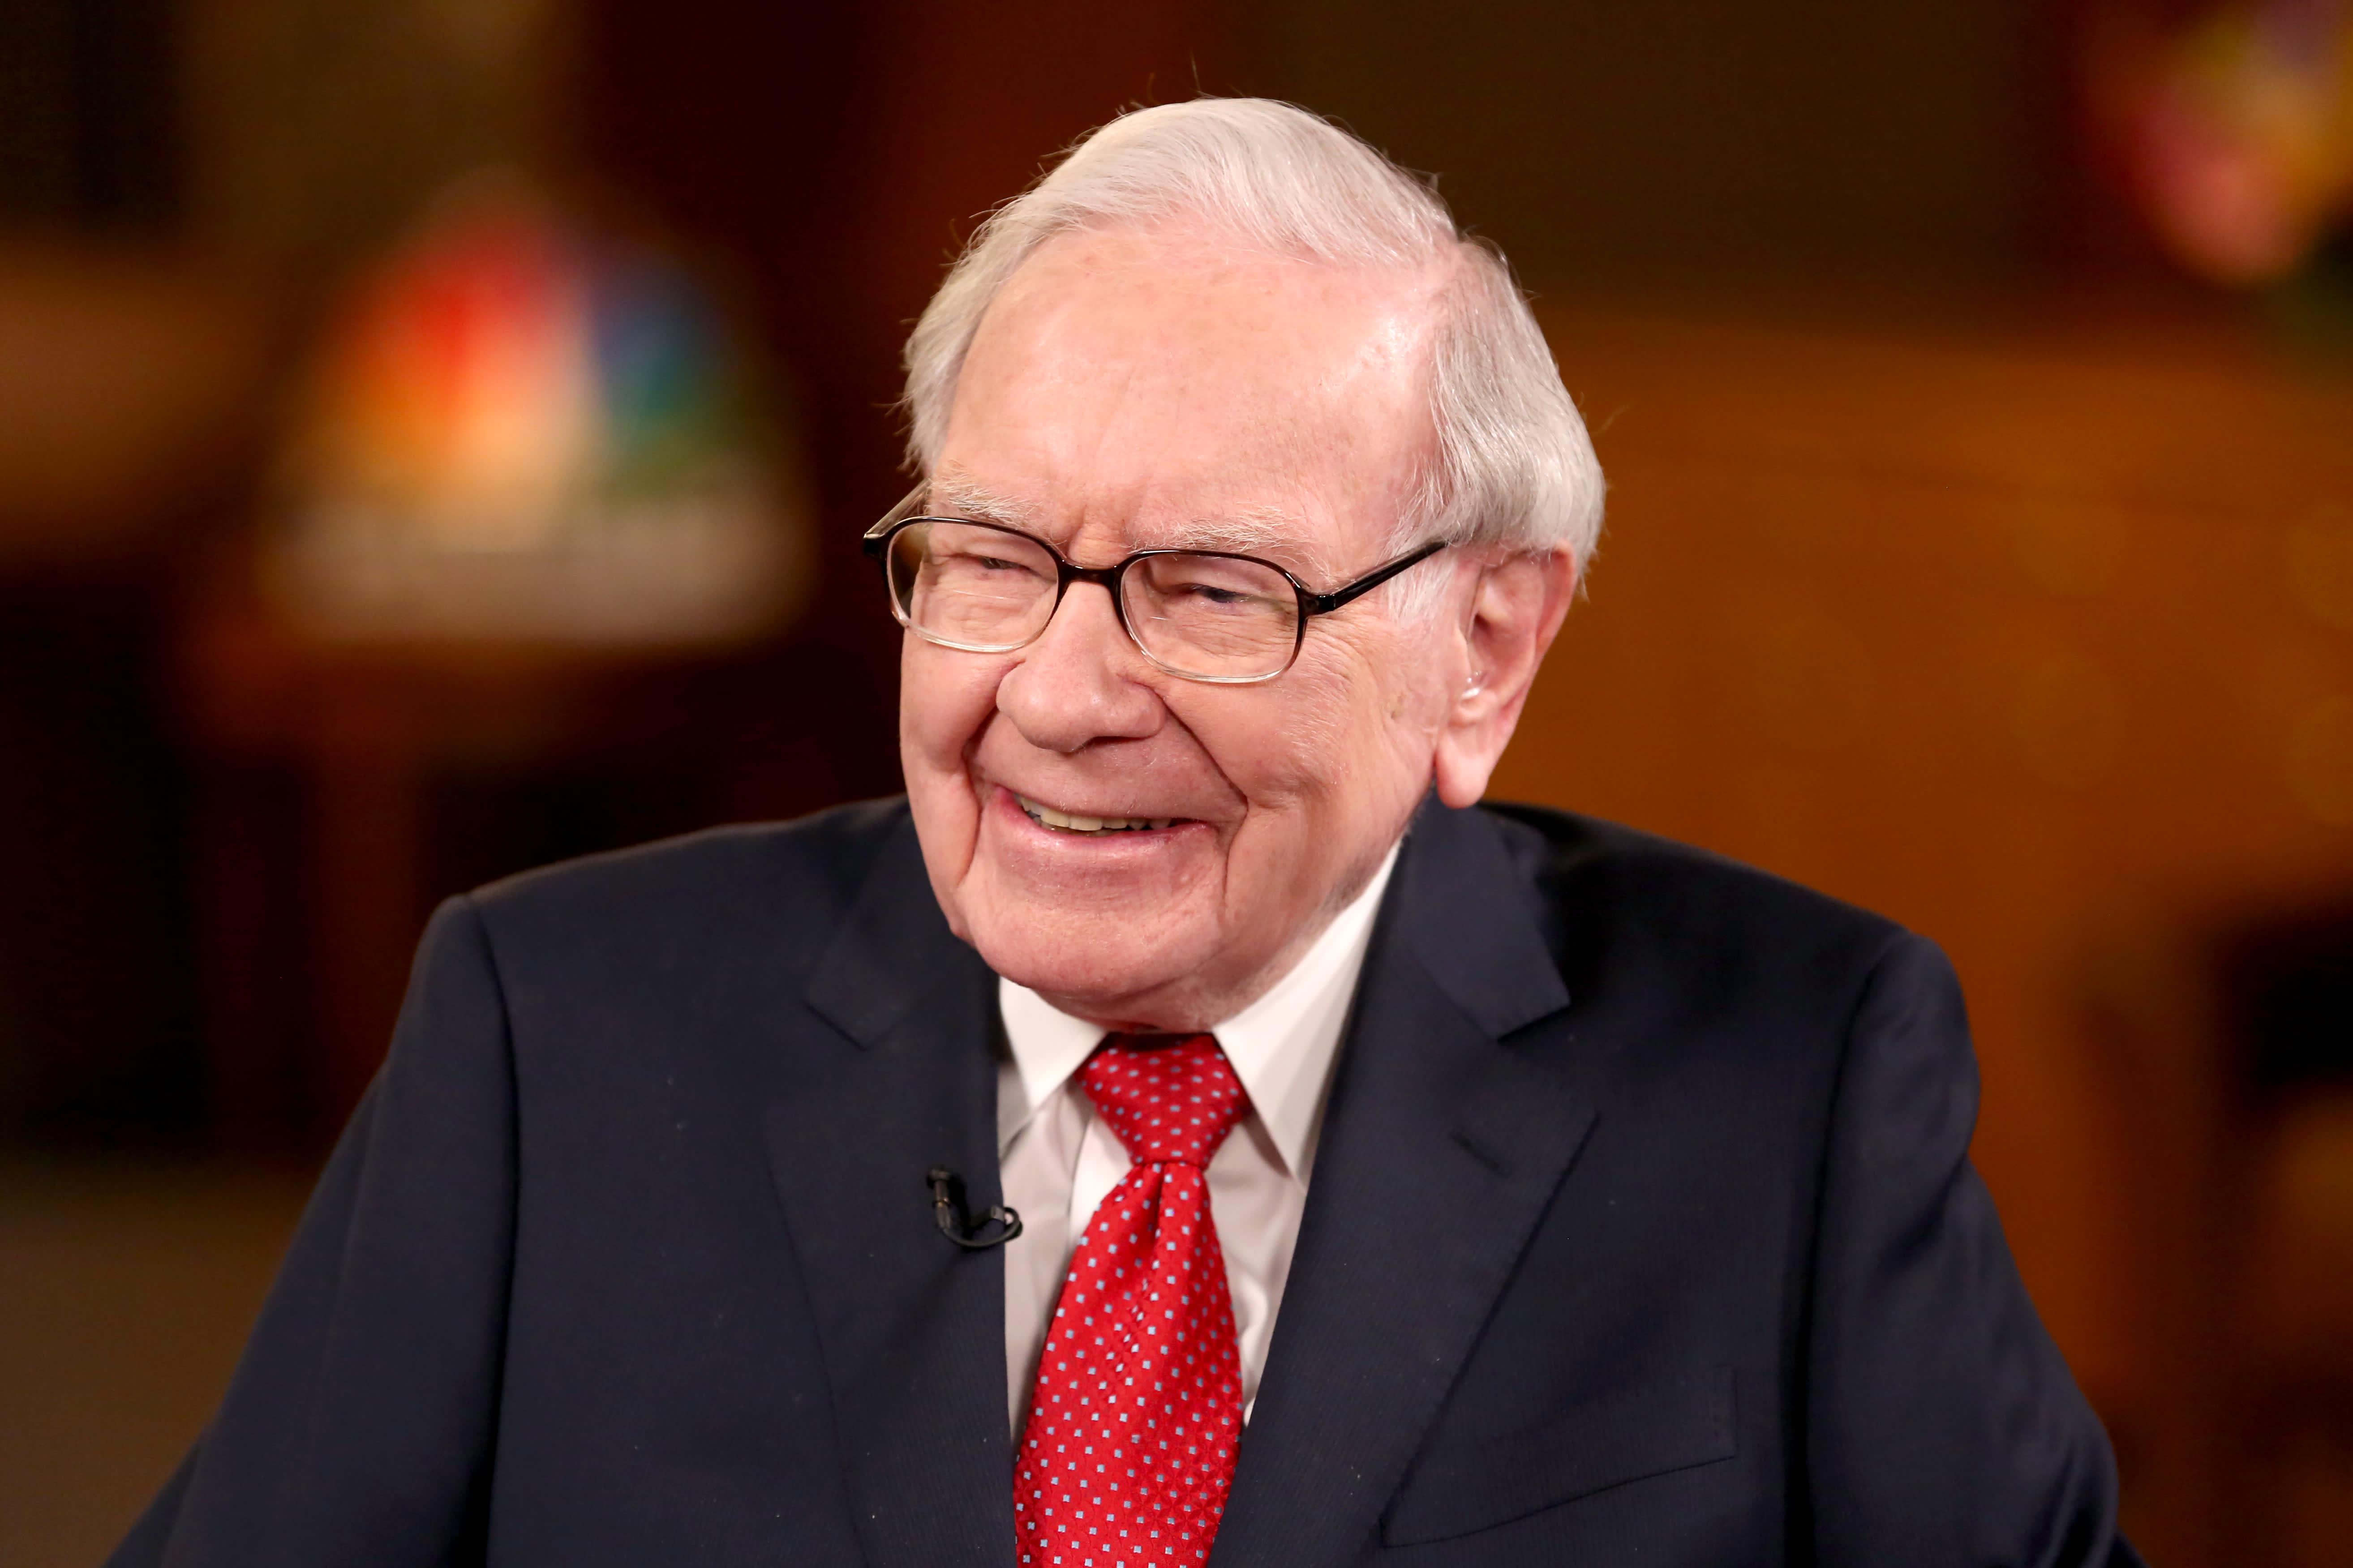 Warren Buffett doesn't believe in Bitcoin, won't buy it even at $ Read here | Mint